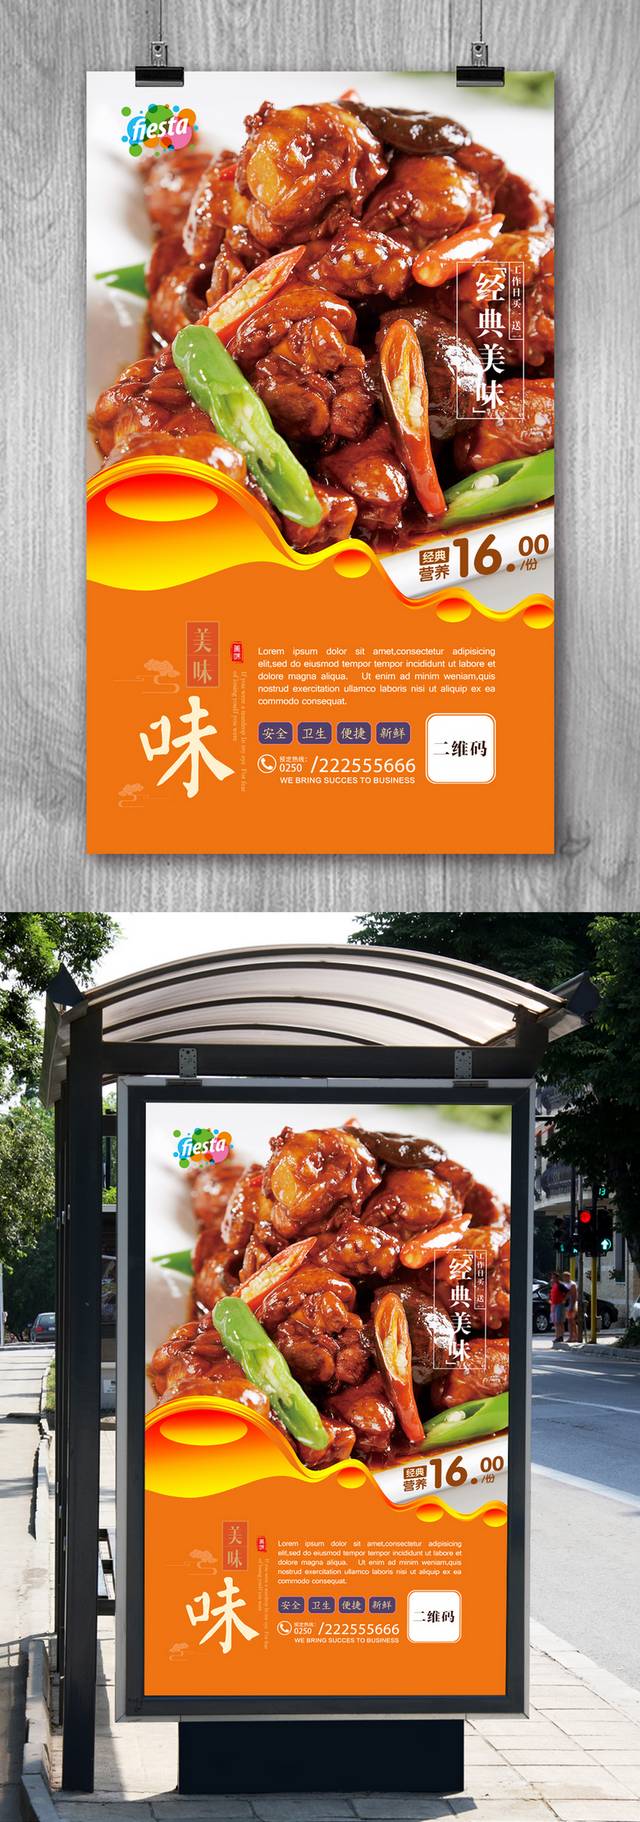 美味郴州烧鸡公海报设计